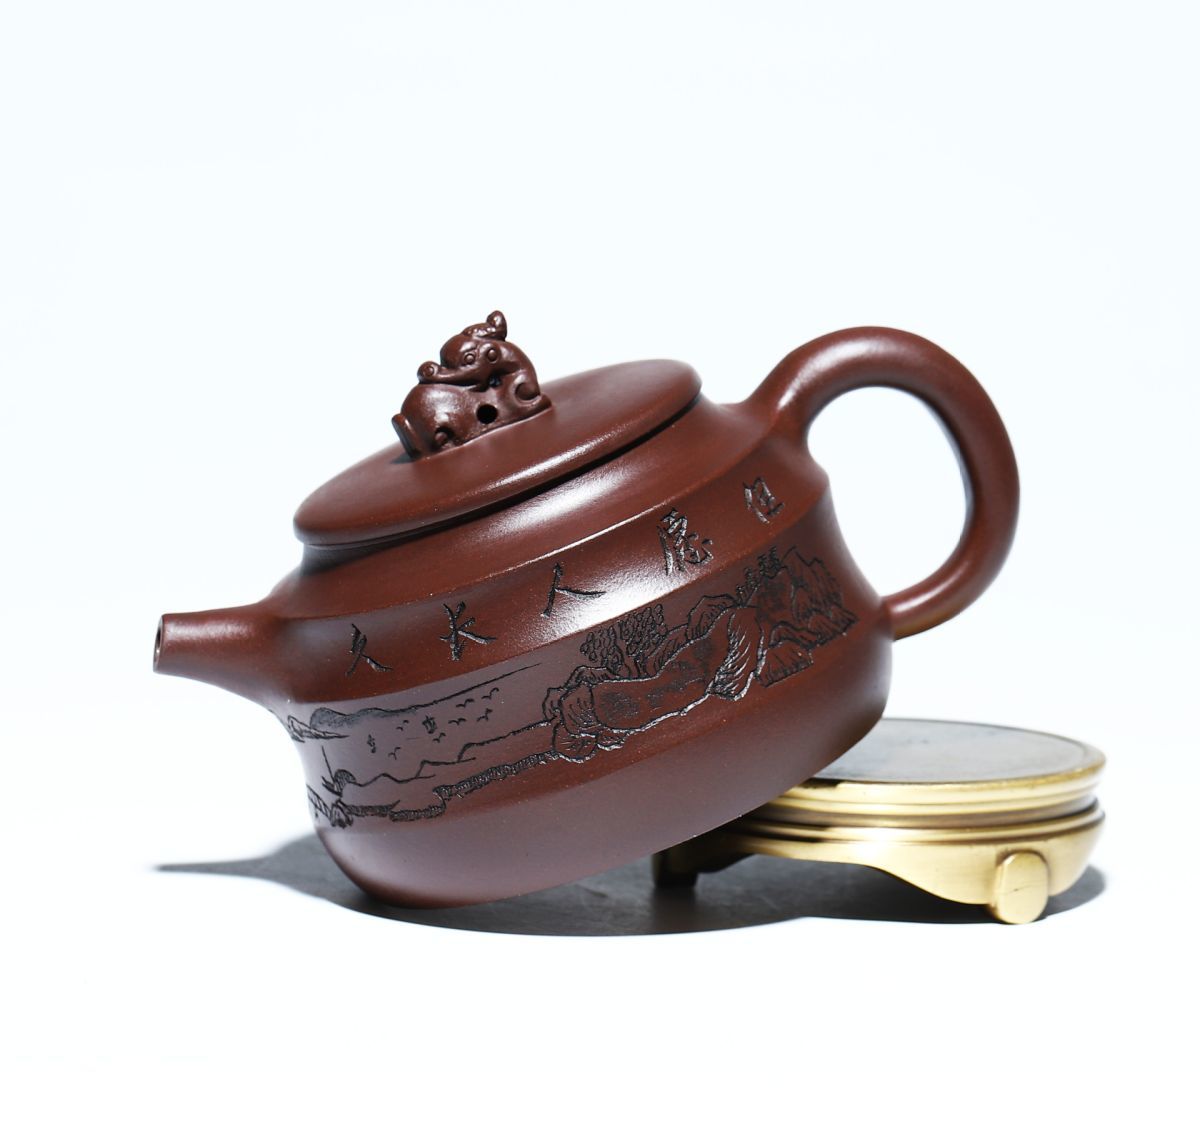 ティーポットおしゃれ 紫砂茶壺 耐熱 土瓶 湯飲み 茶器 きゅうす 急須 おしゃれ 中国製 焼き物 ティーポット おすすめ お茶 逸品 lh766_画像8